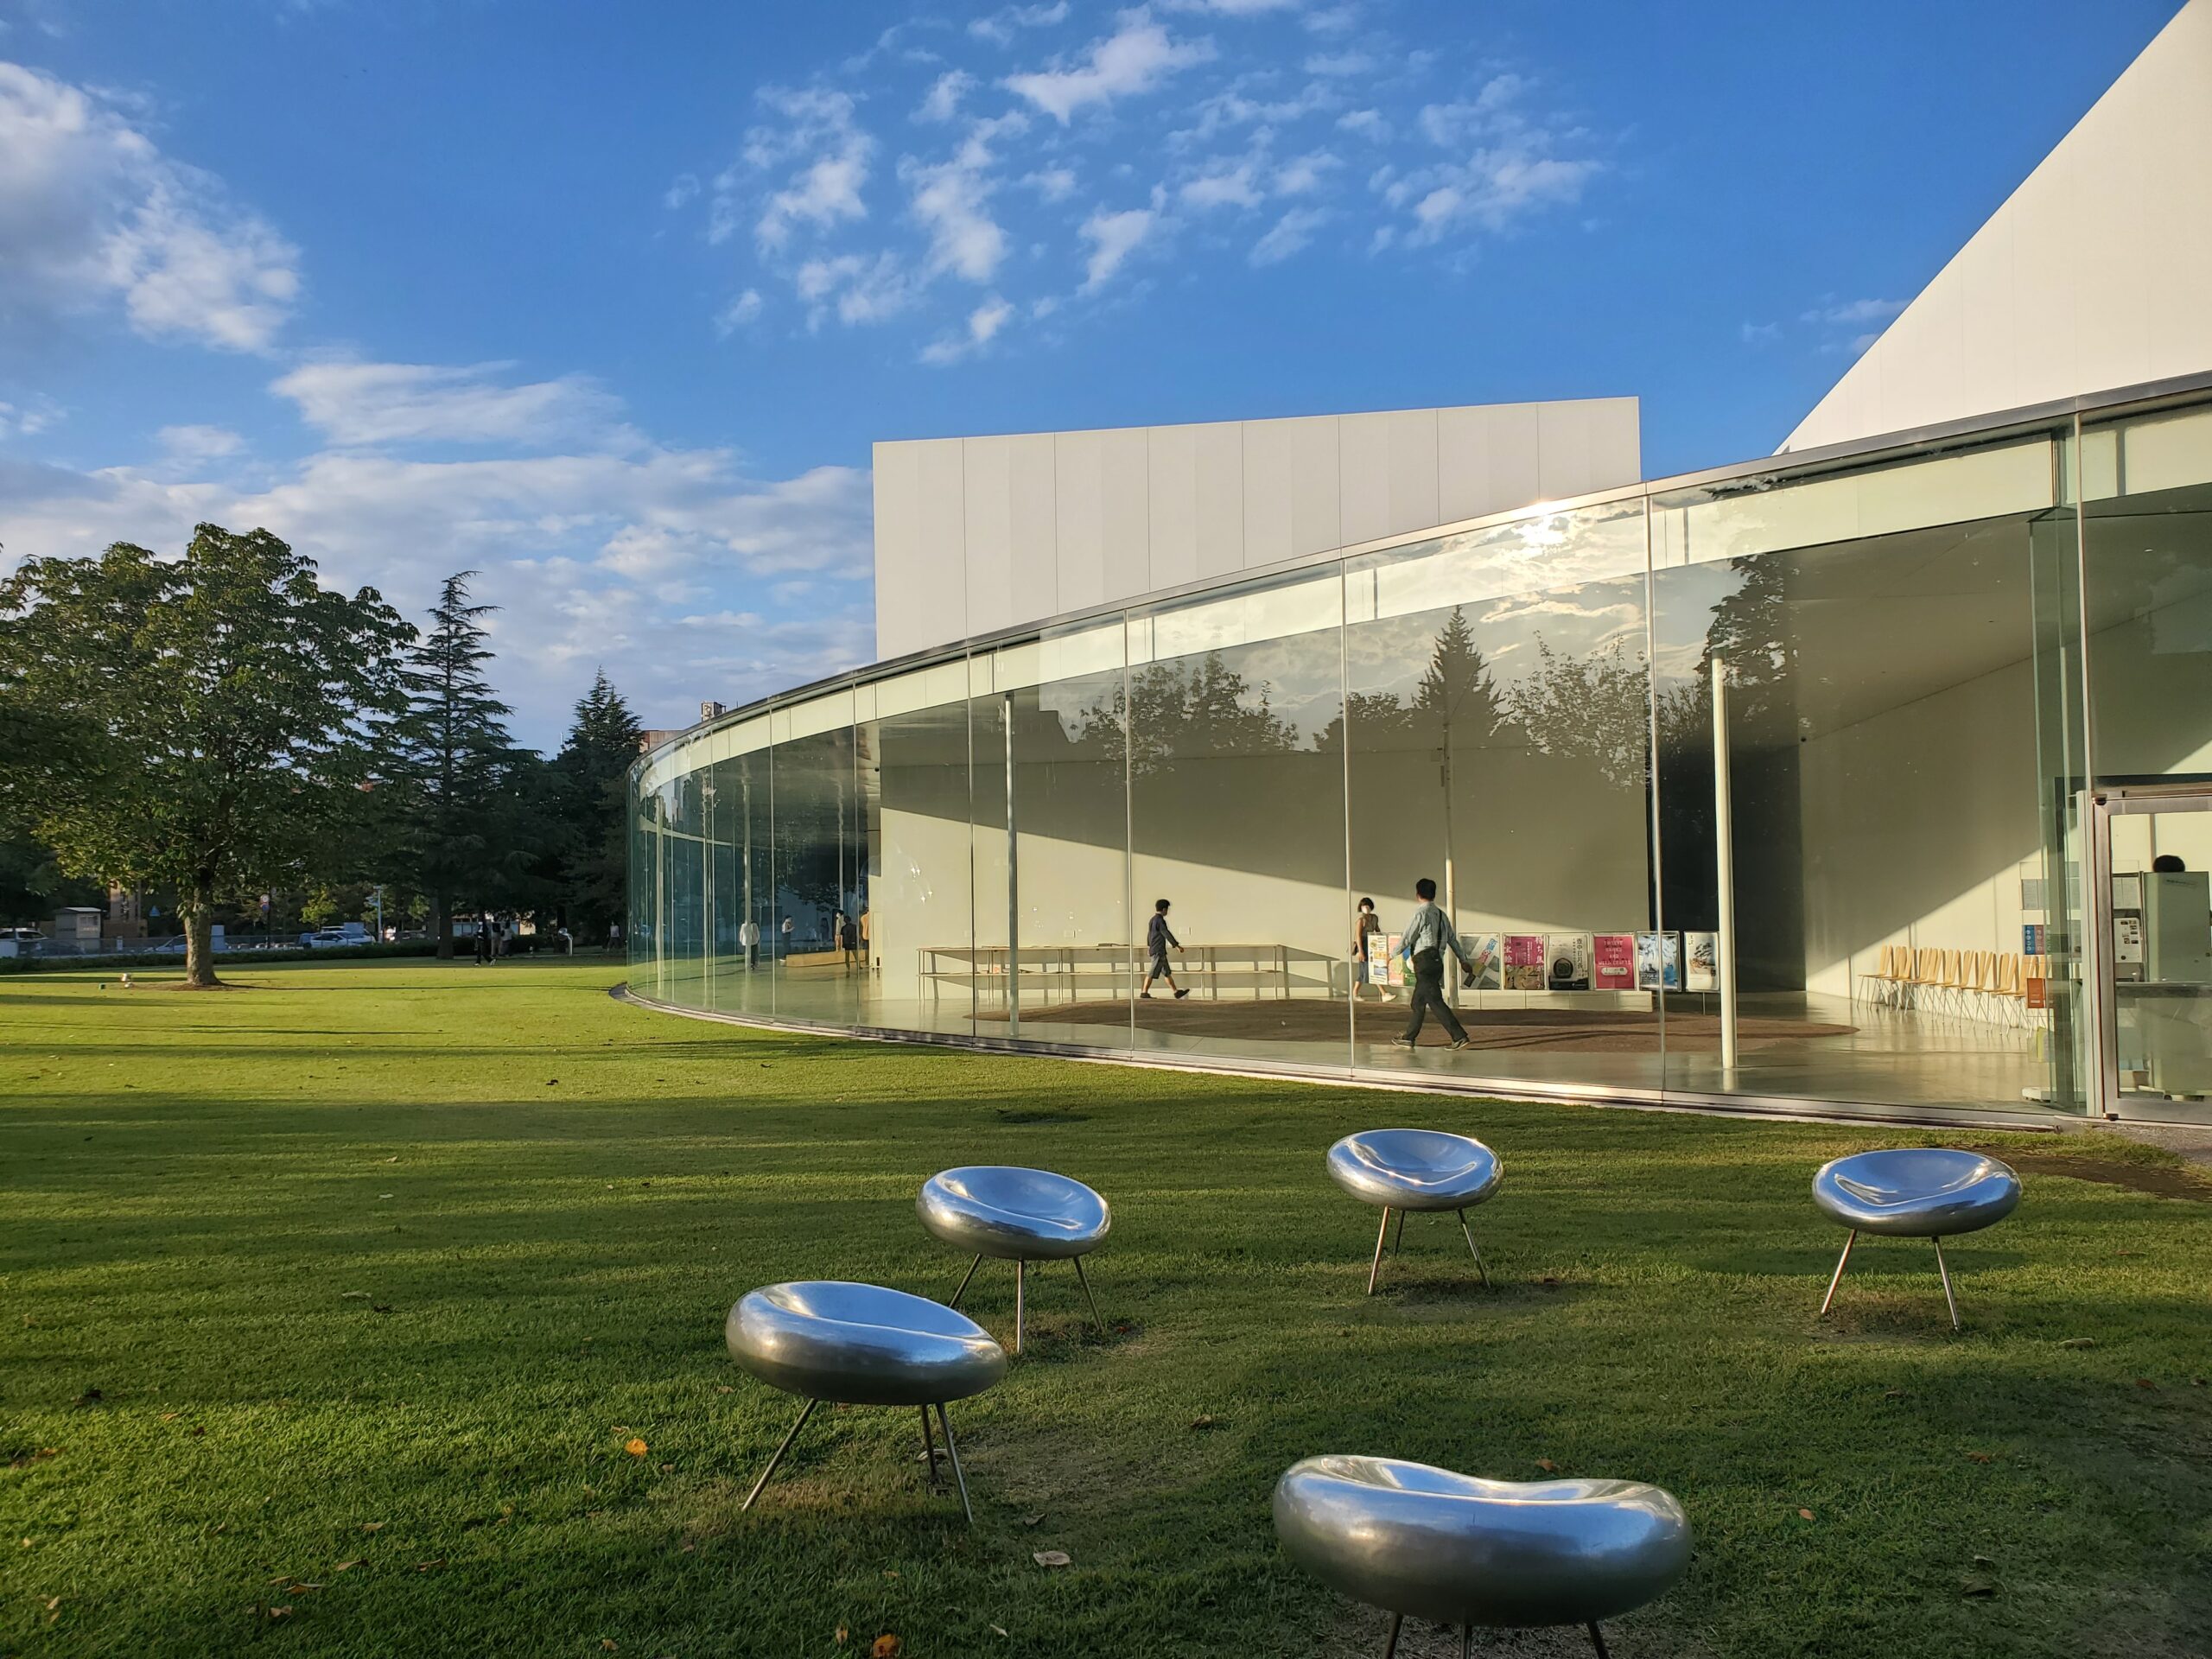 金沢21世紀美術館】はインスタ映えする見どころがいっぱい | 金沢や北陸のおいしいを探す